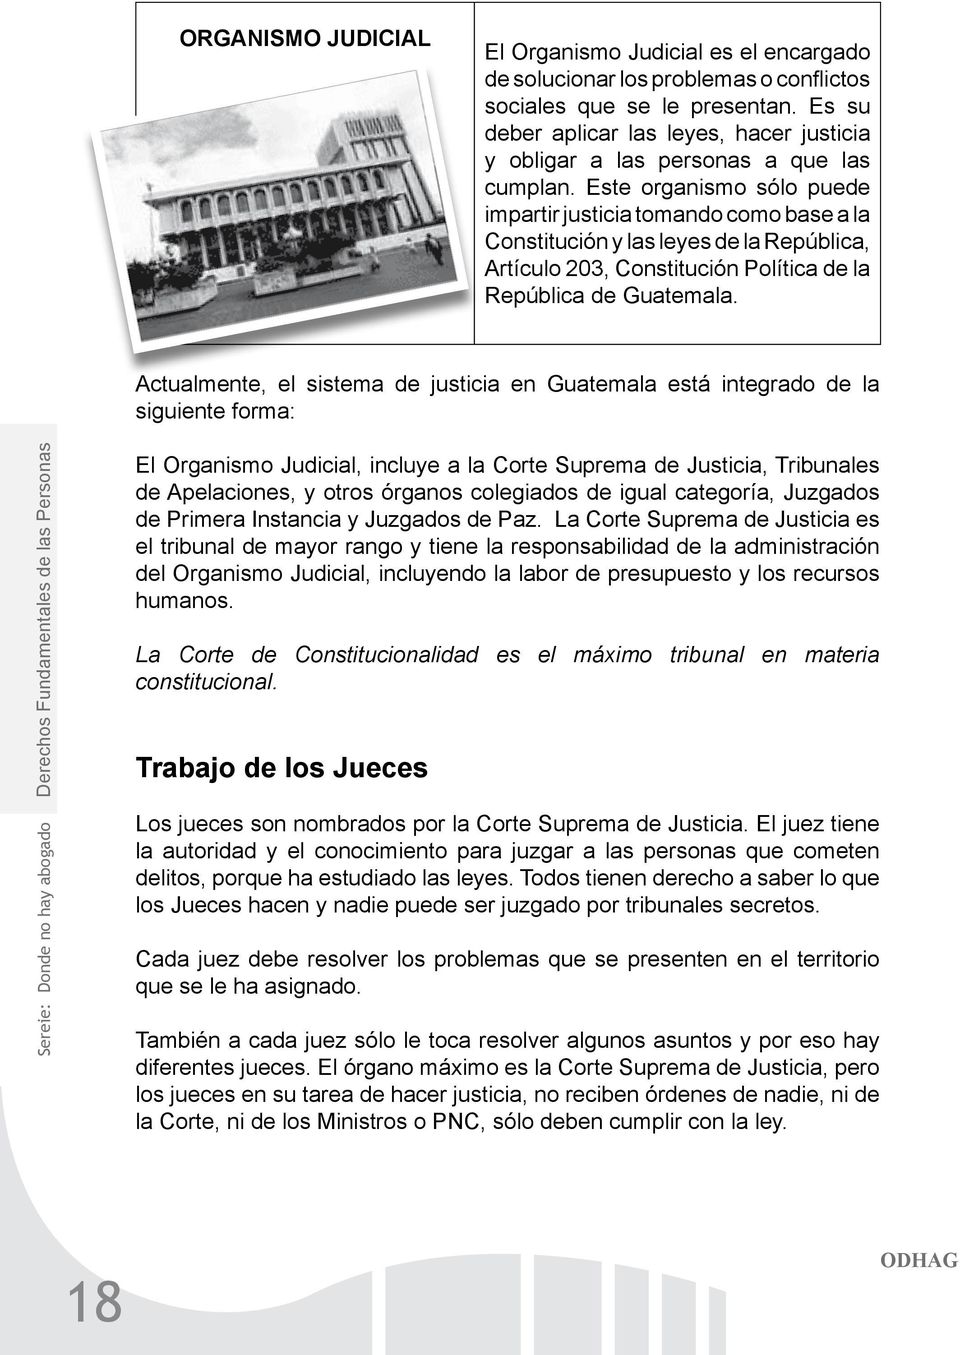 Este organismo sólo puede impartir justicia tomando como base a la Constitución y las leyes de la República, Artículo 203, Constitución Política de la República de Guatemala.